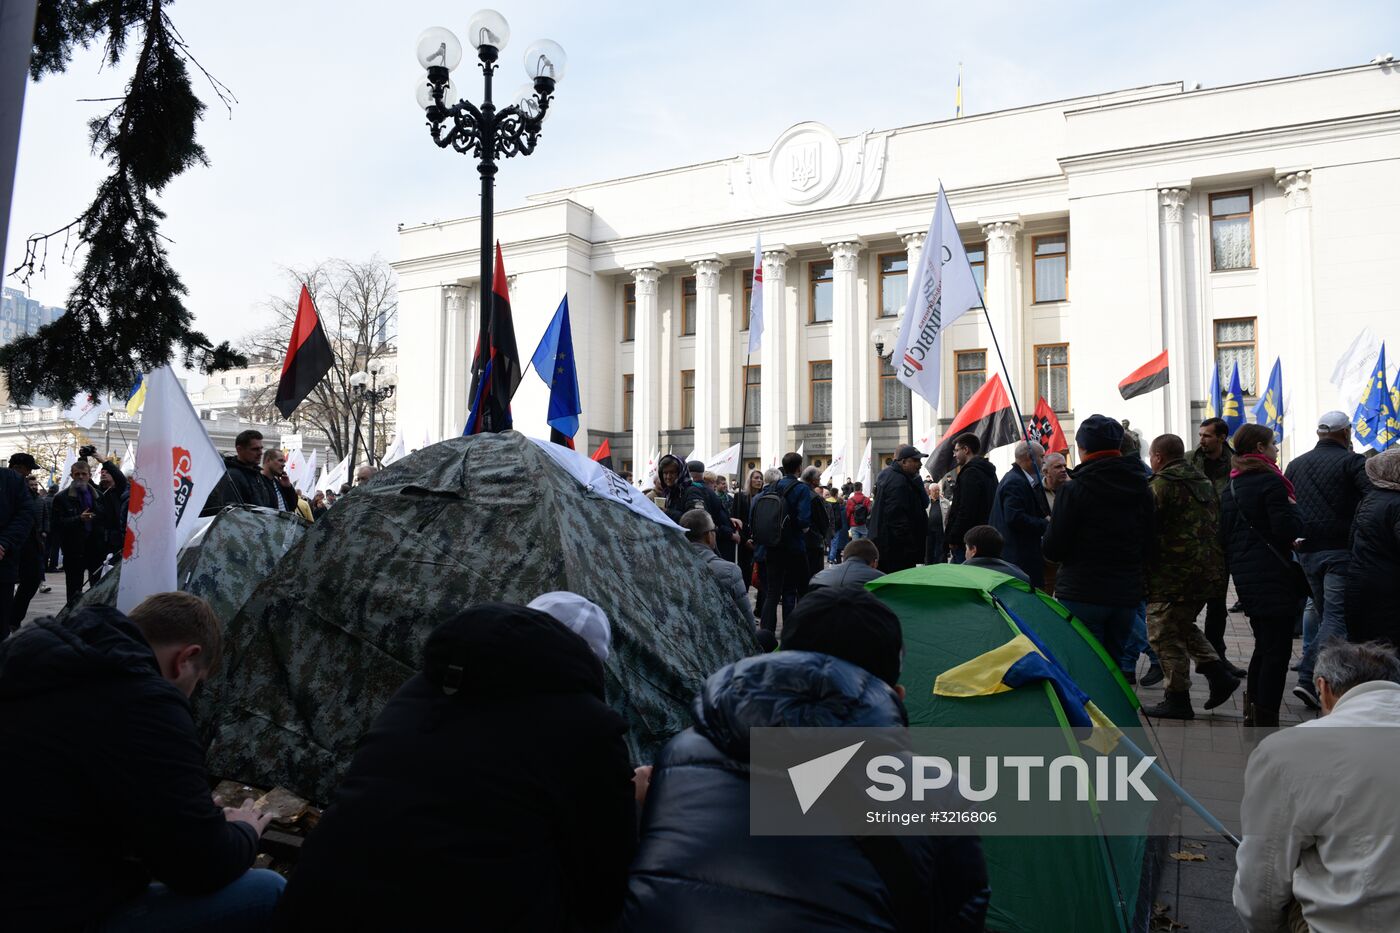 Protest outside Verkhovna Rada in Kiev